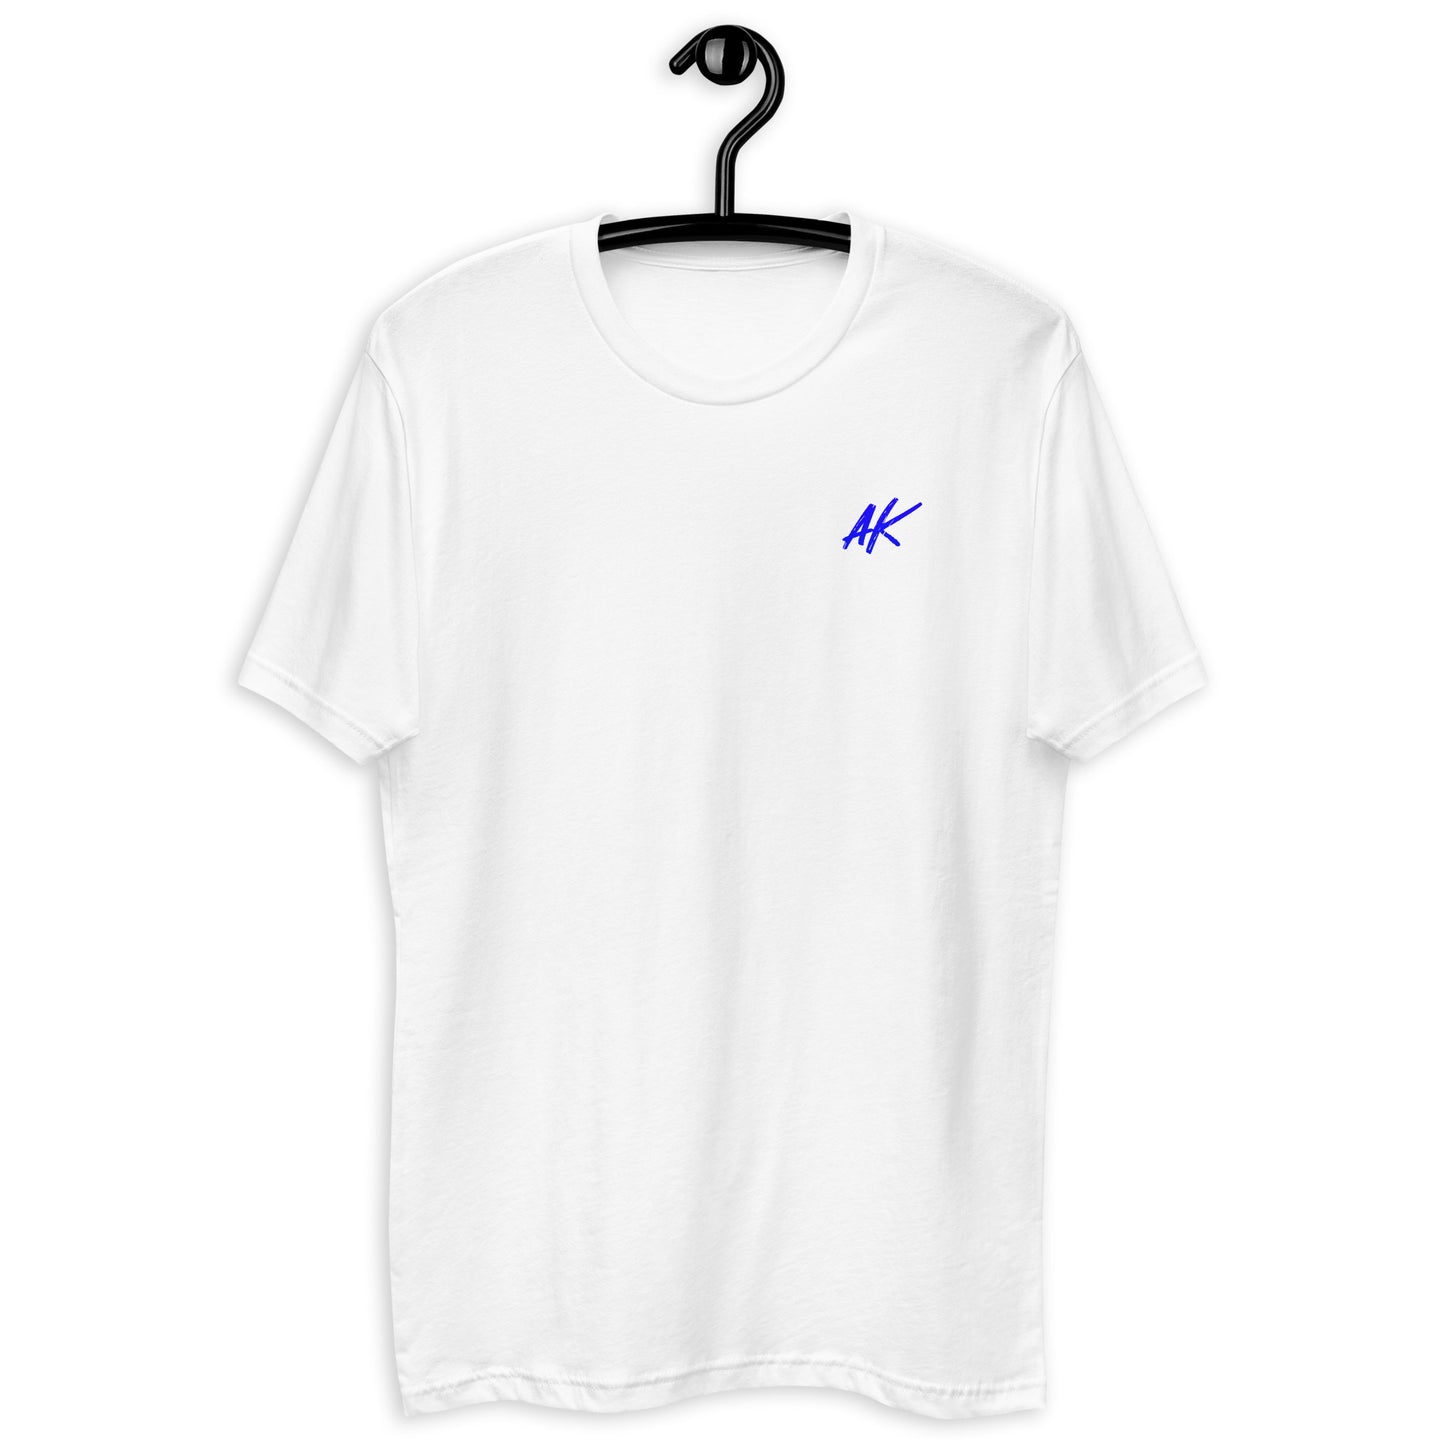 M| AK 3x T-shirt - blue